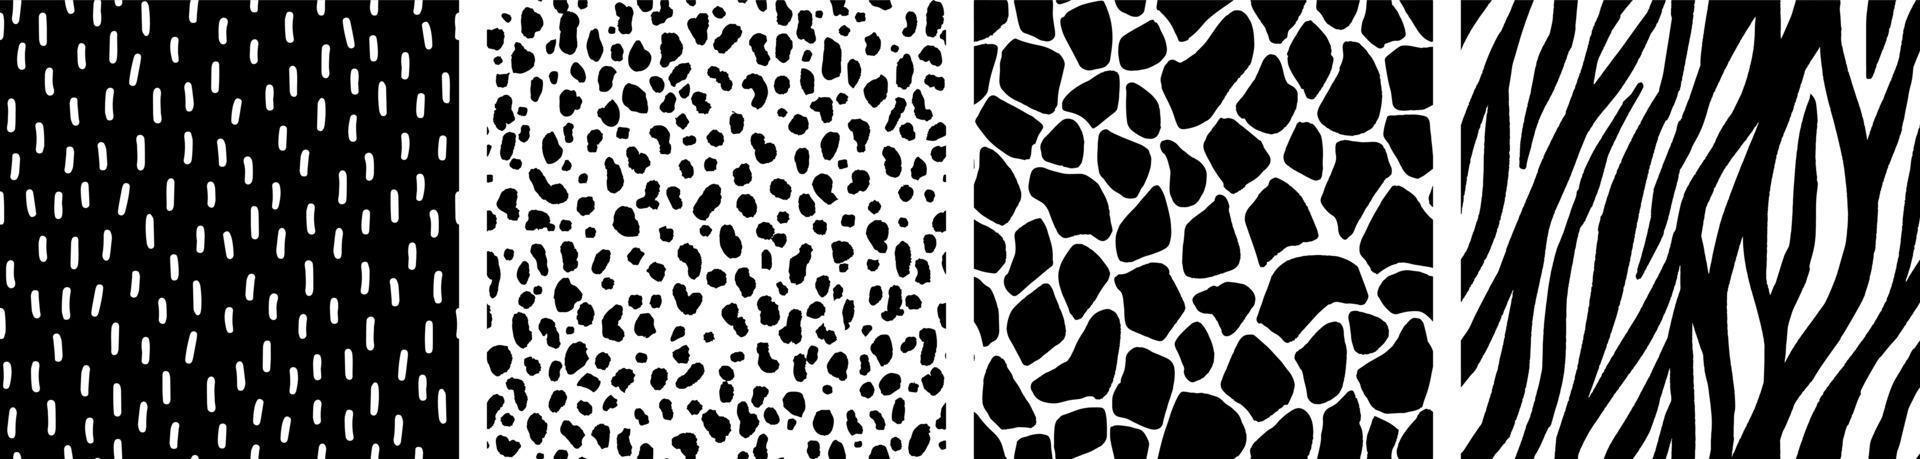 conjunto de patrones vectoriales de piel animal. estampados abstractos de animales en blanco y negro con pinceladas pintadas a mano. fondos y texturas abstractos sin fisuras. vector